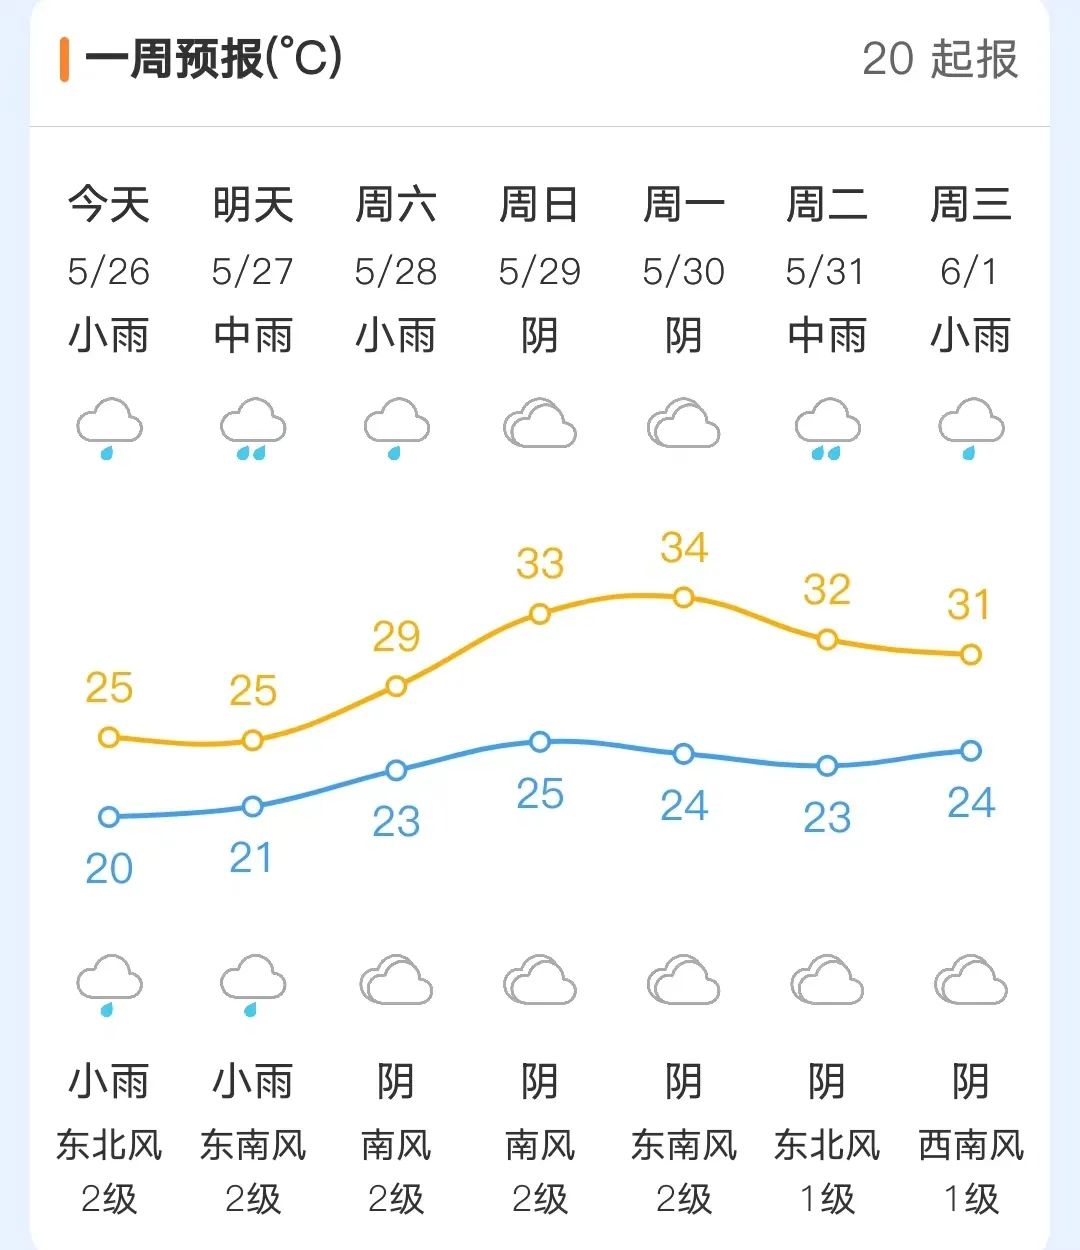 未来三天福州气温大踏步升高 29日高温将达到33℃